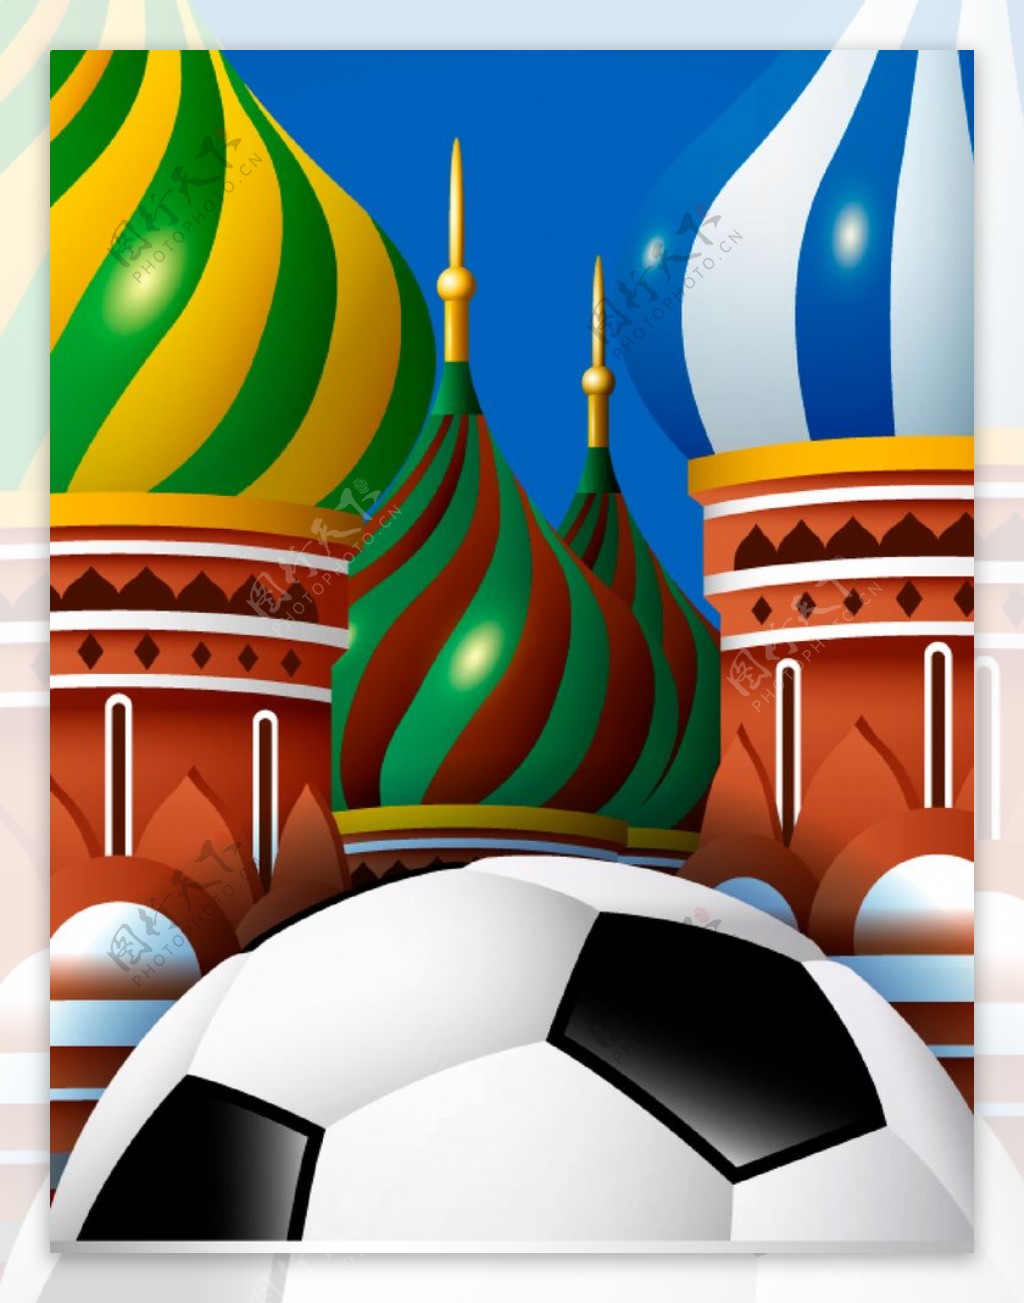 俄罗斯世界杯图片